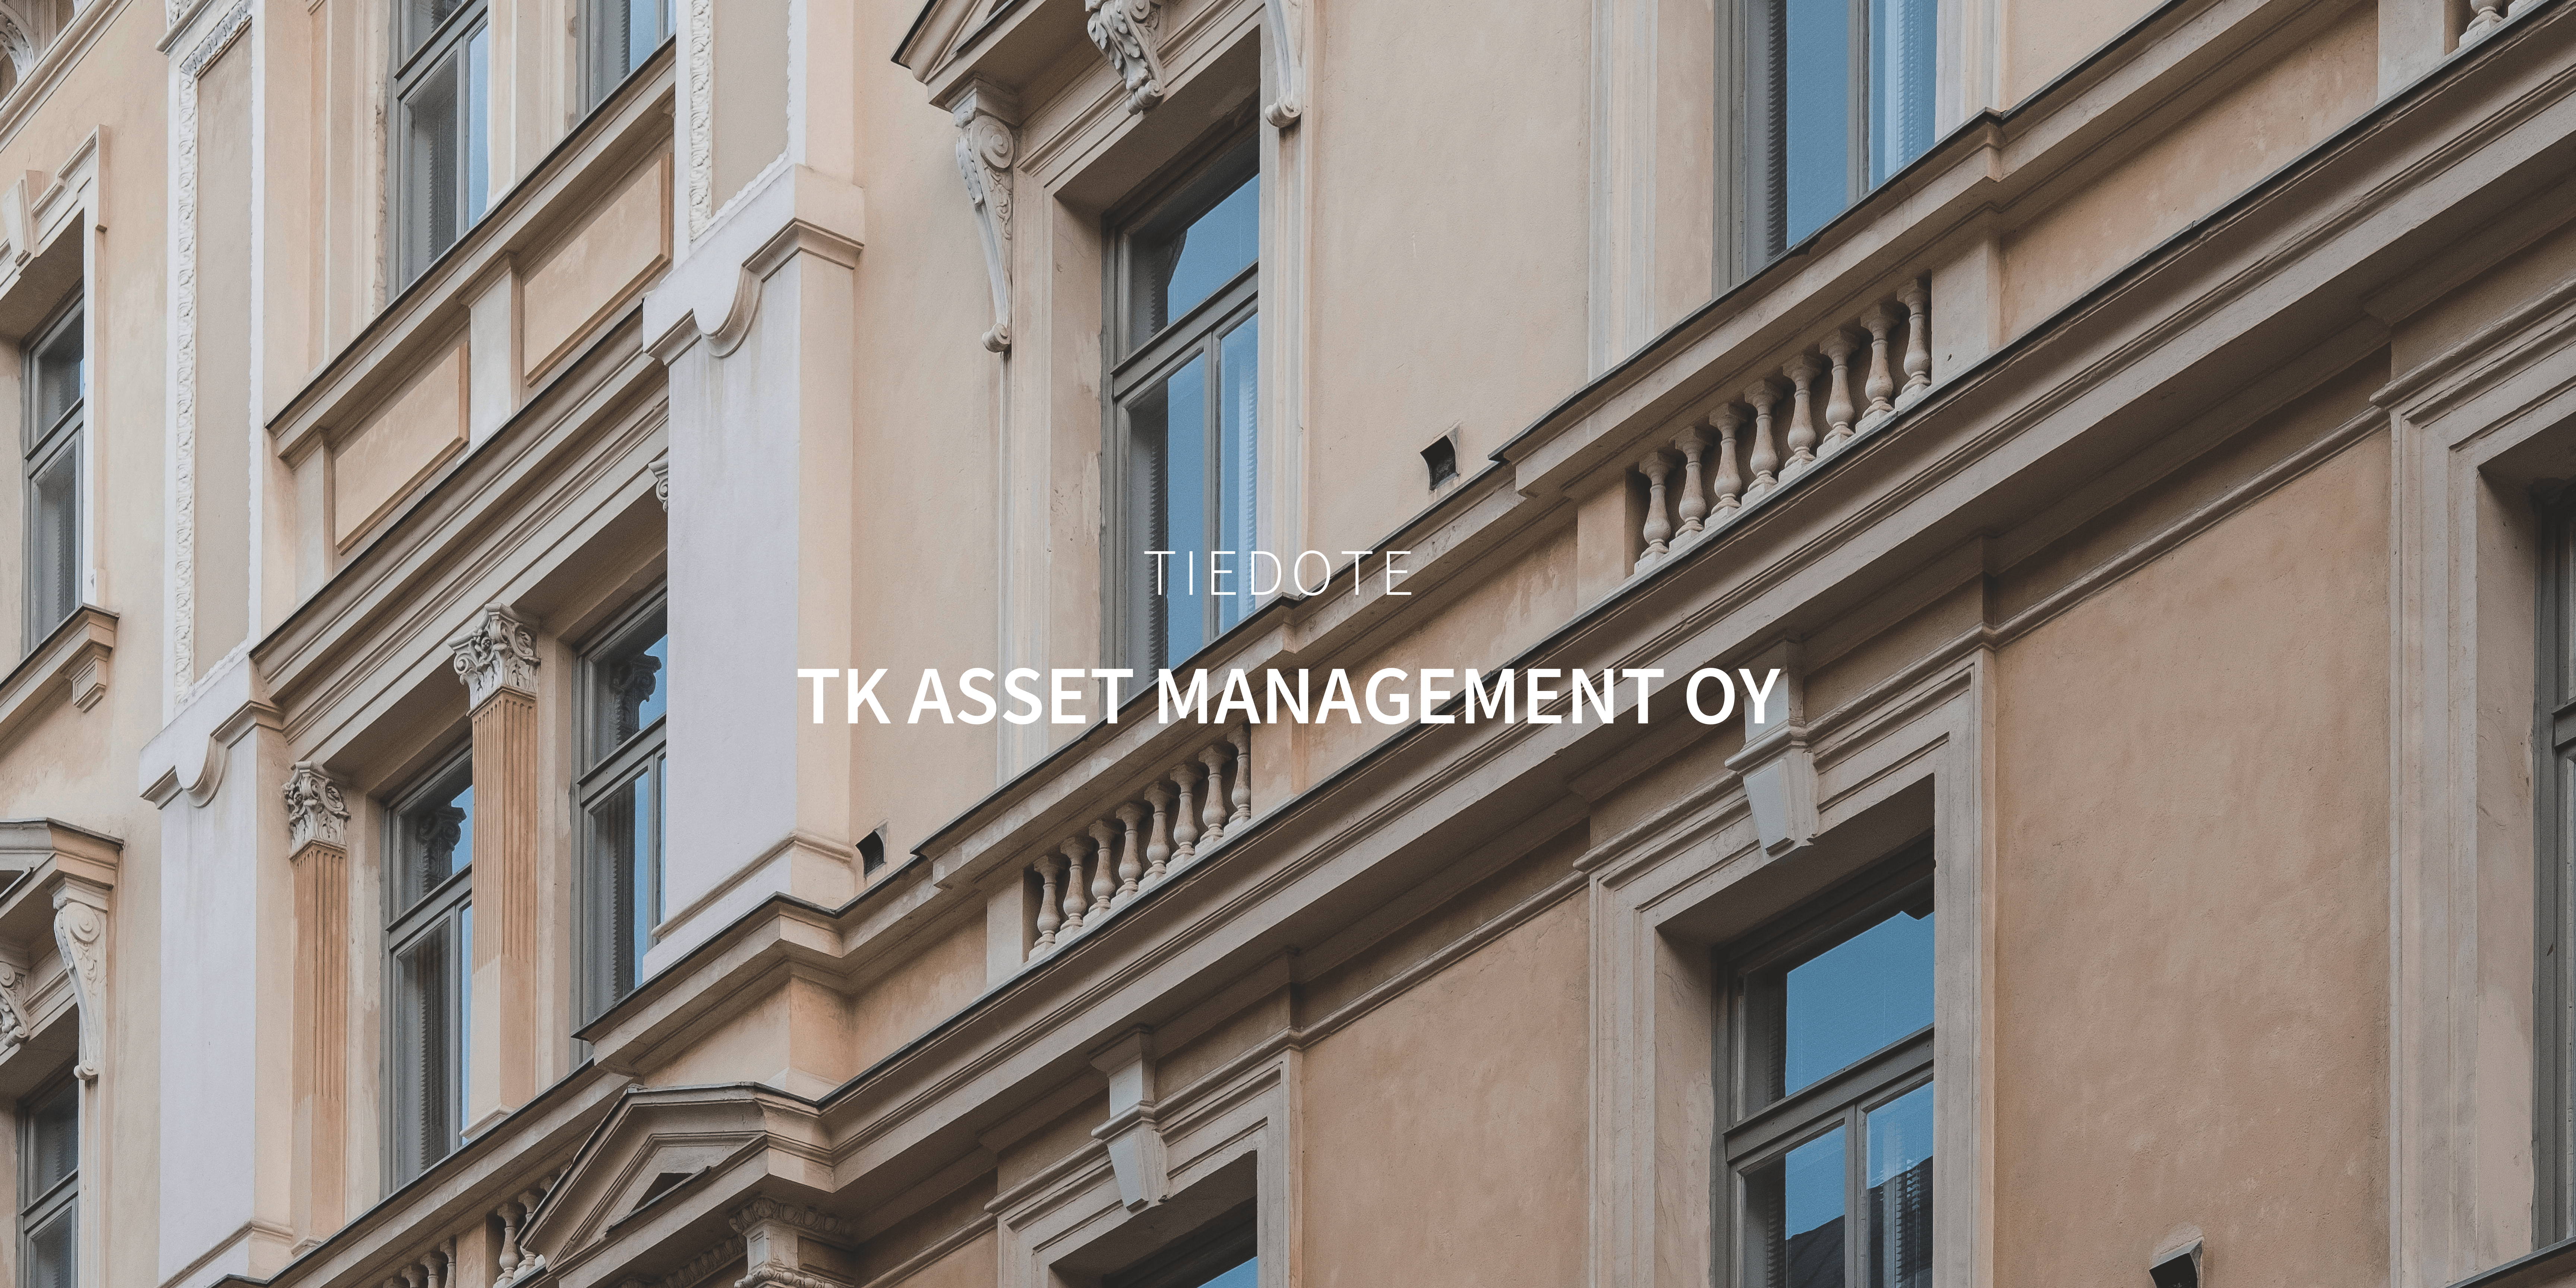 Tuloskiinteistöt on perustanut Oskari Hartikaisen ja Kalle Hallanoron kanssa TK Asset Management Oy:n